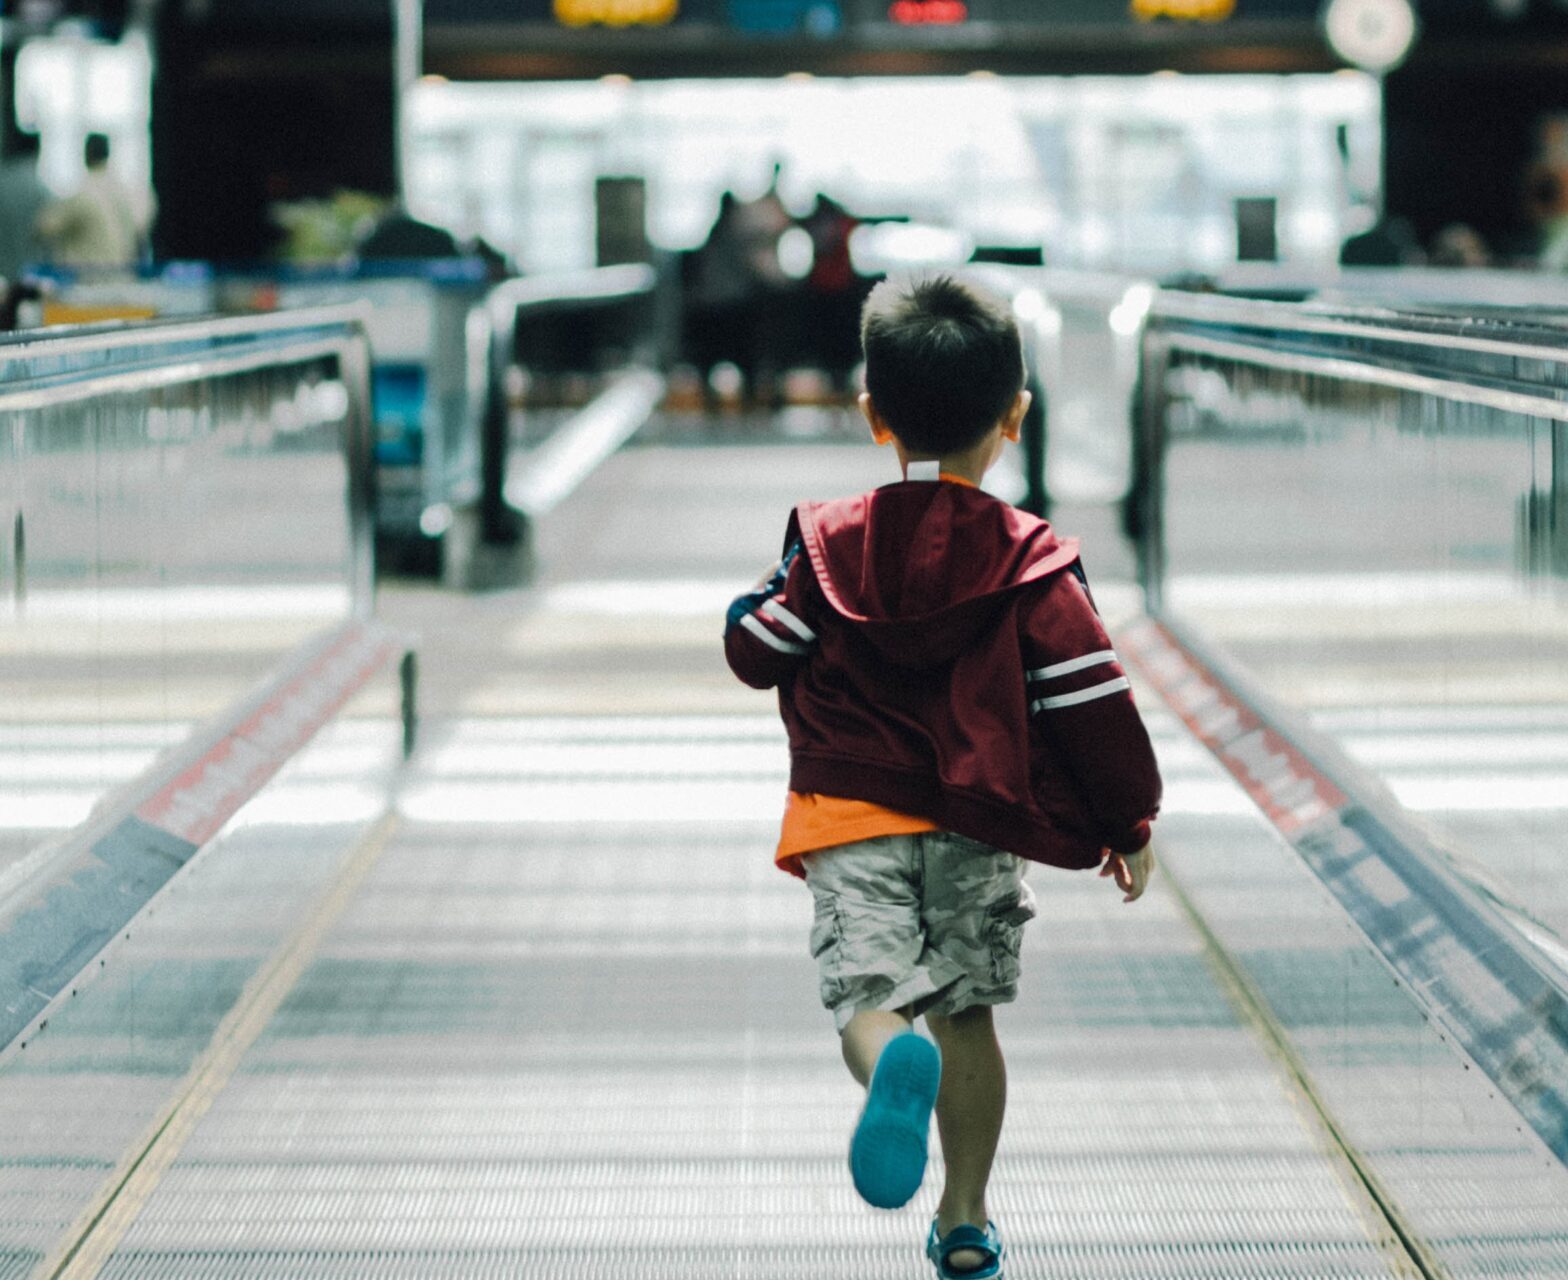 a child running on an escalator